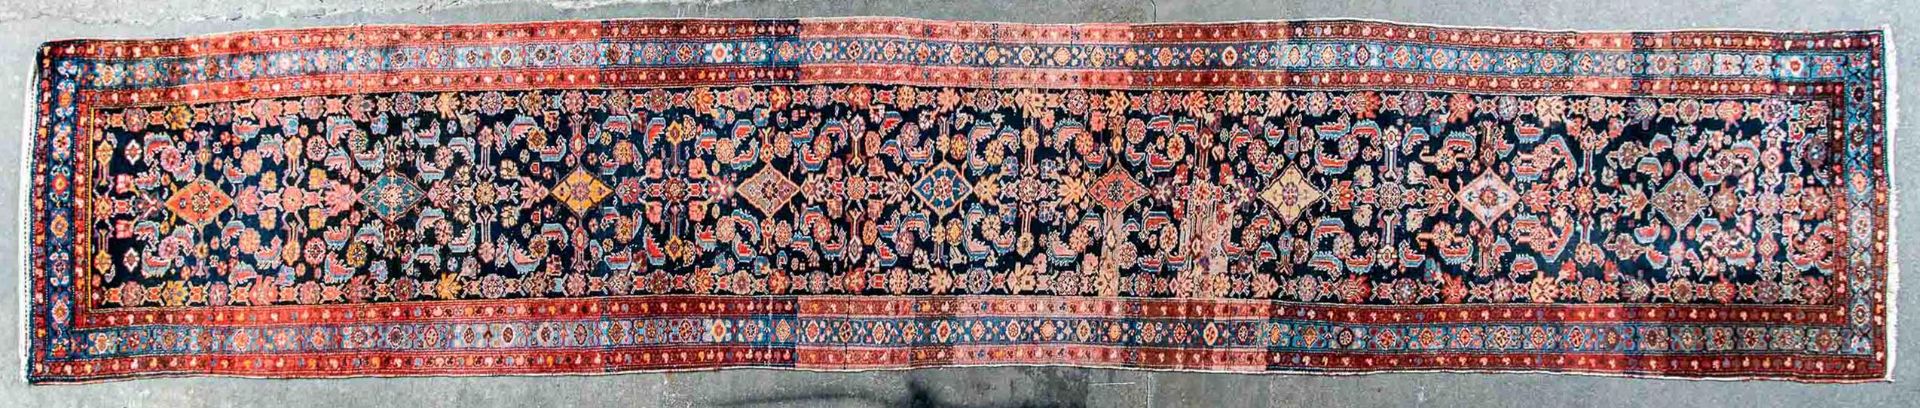 Alte oder antike indigoblau-grundige Teppichgalerie, Iran Mitte 20. Jhdt., ca. 102 x 528 cm. Stärke - Image 3 of 11